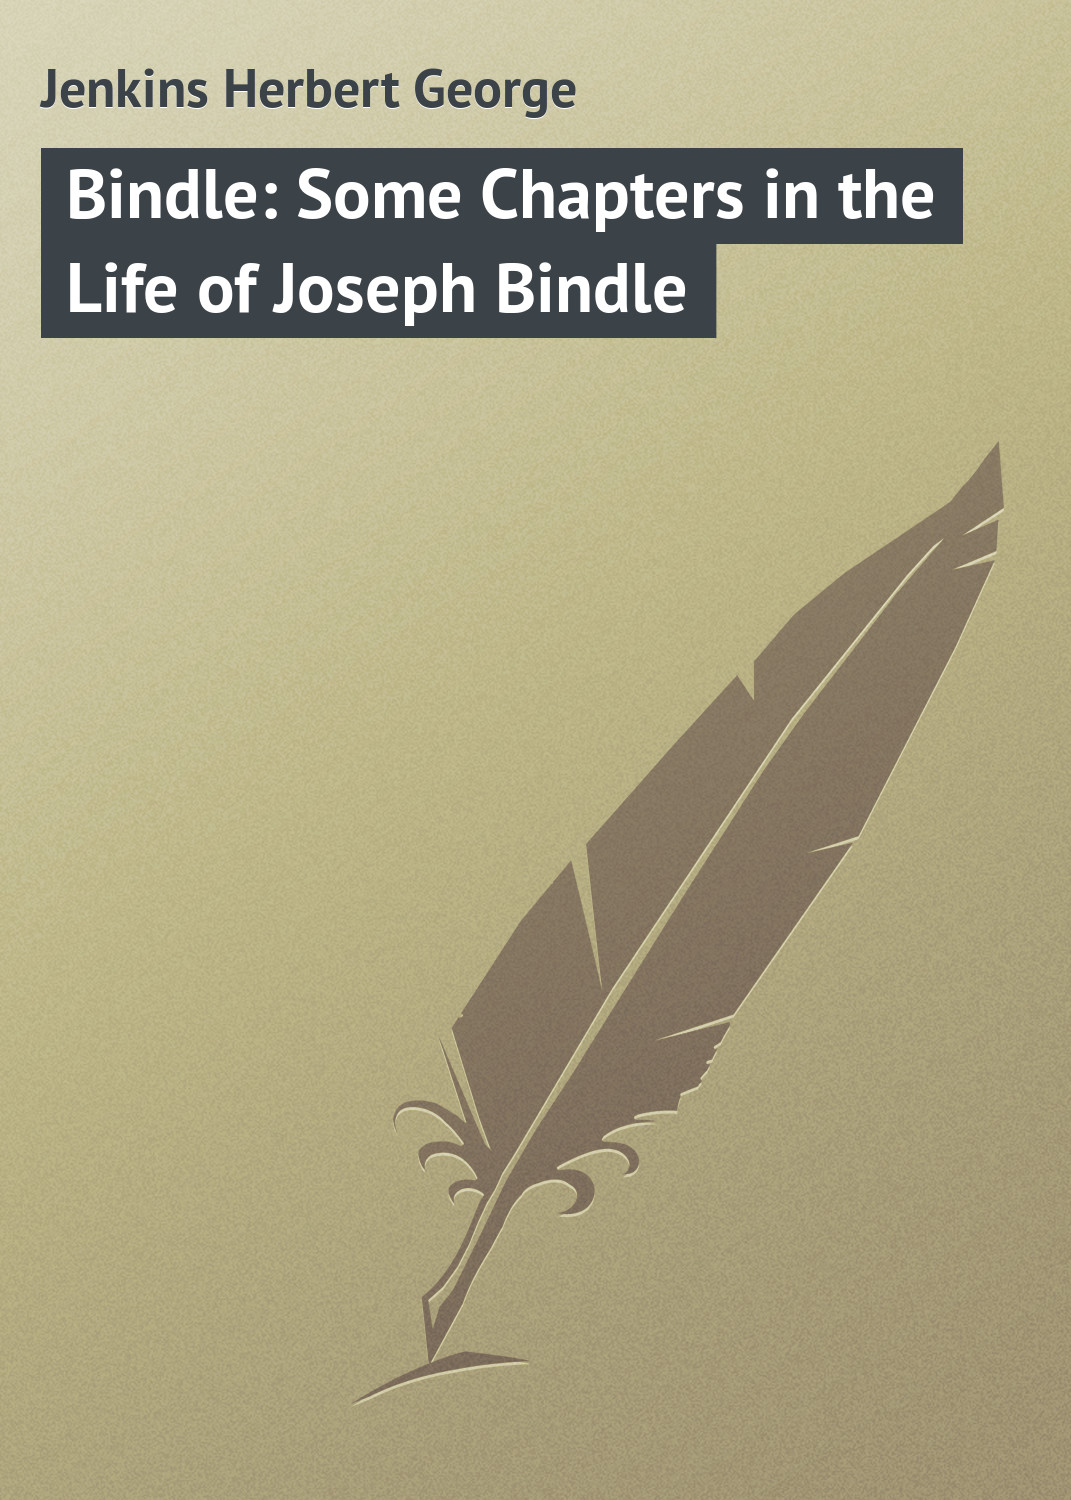 Книга Bindle: Some Chapters in the Life of Joseph Bindle из серии , созданная Herbert Jenkins, может относится к жанру Зарубежная классика, Зарубежный юмор. Стоимость электронной книги Bindle: Some Chapters in the Life of Joseph Bindle с идентификатором 23148035 составляет 5.99 руб.